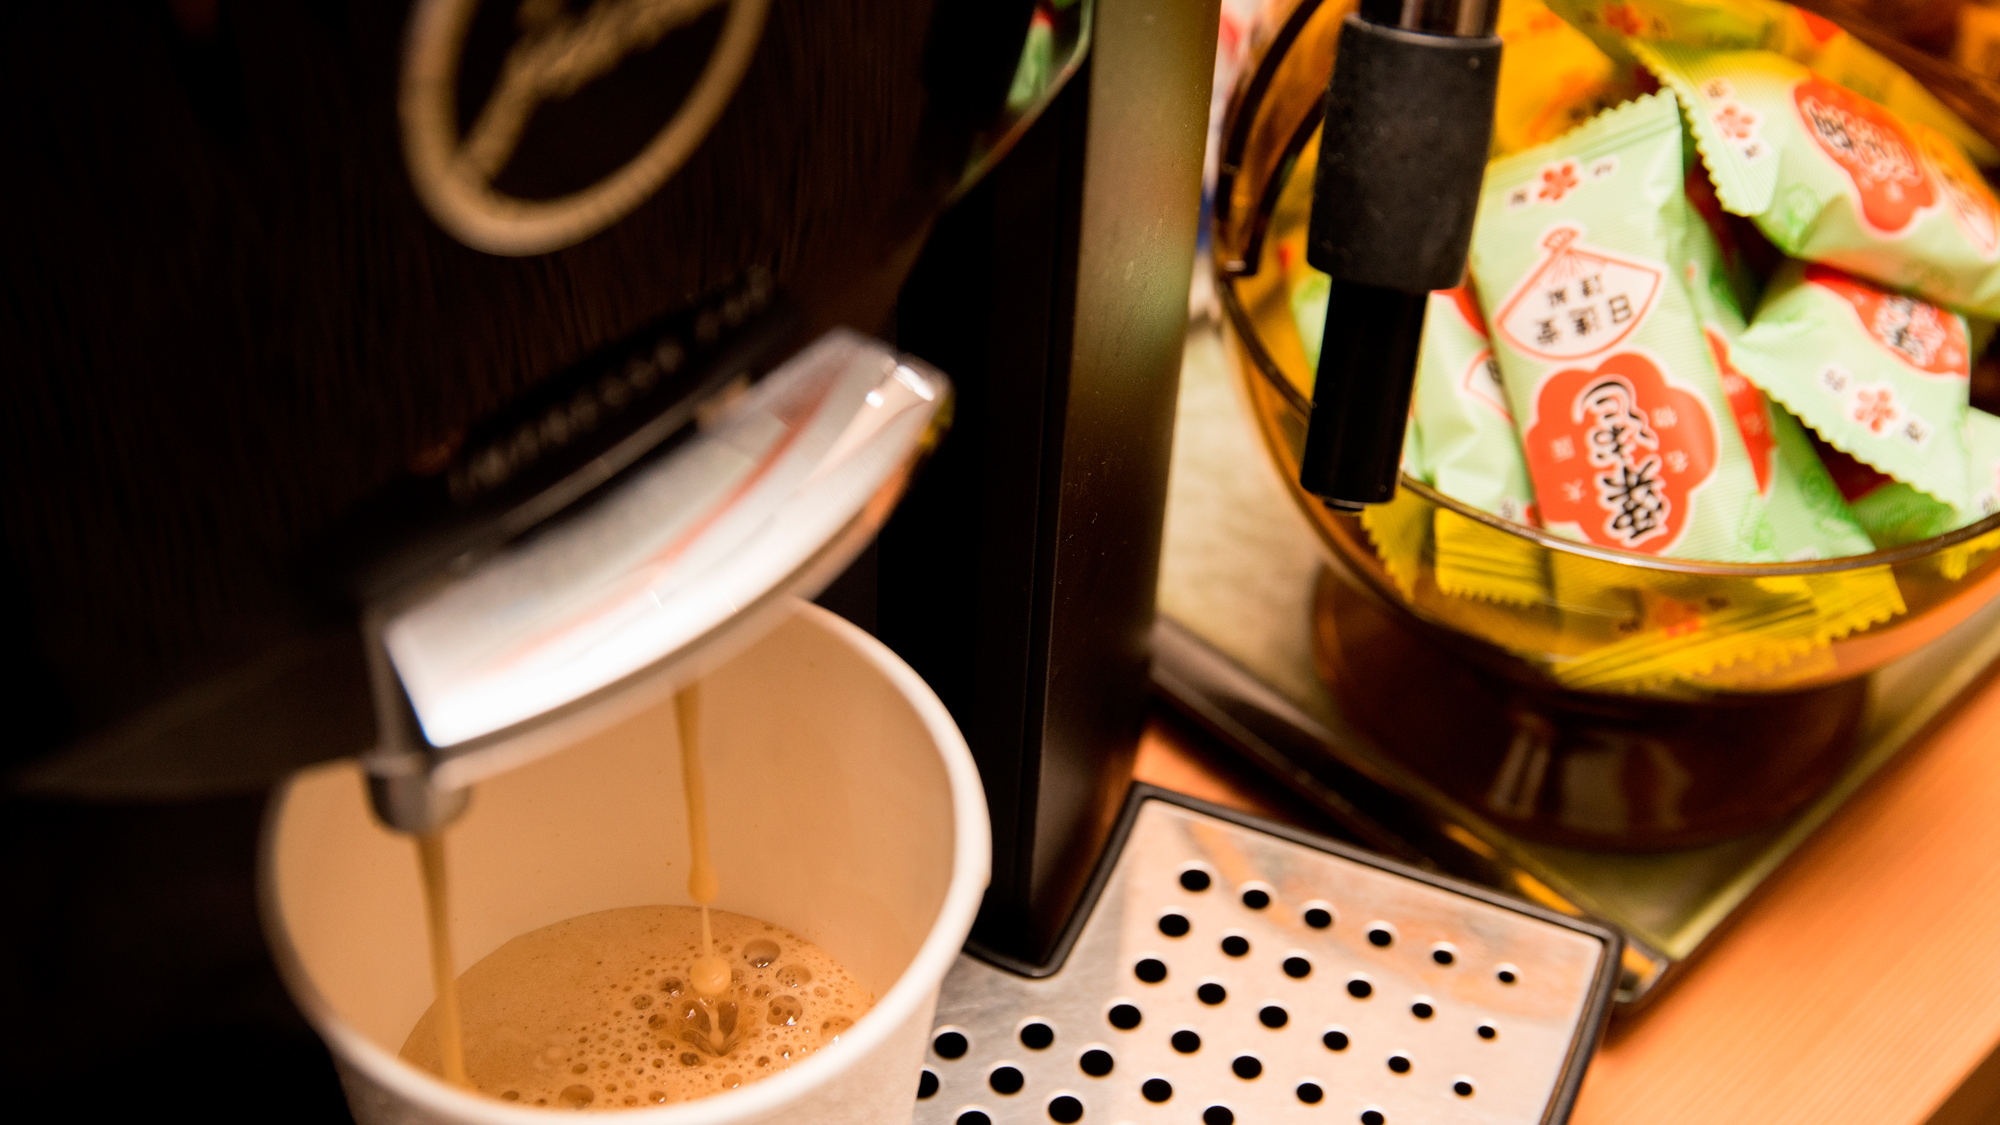 【ロビー・コーヒーマシン】ロビーには挽きたての豆で炒れたコーヒーを楽しめるマシンがございます